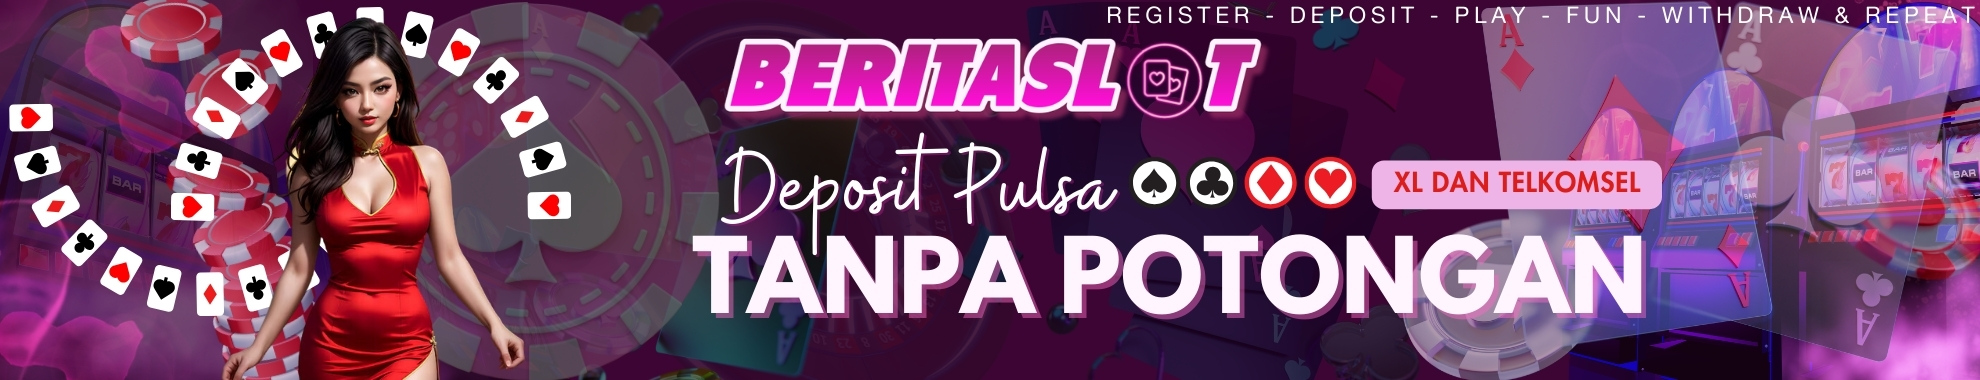 BERITASLOT | DEPO PULSA